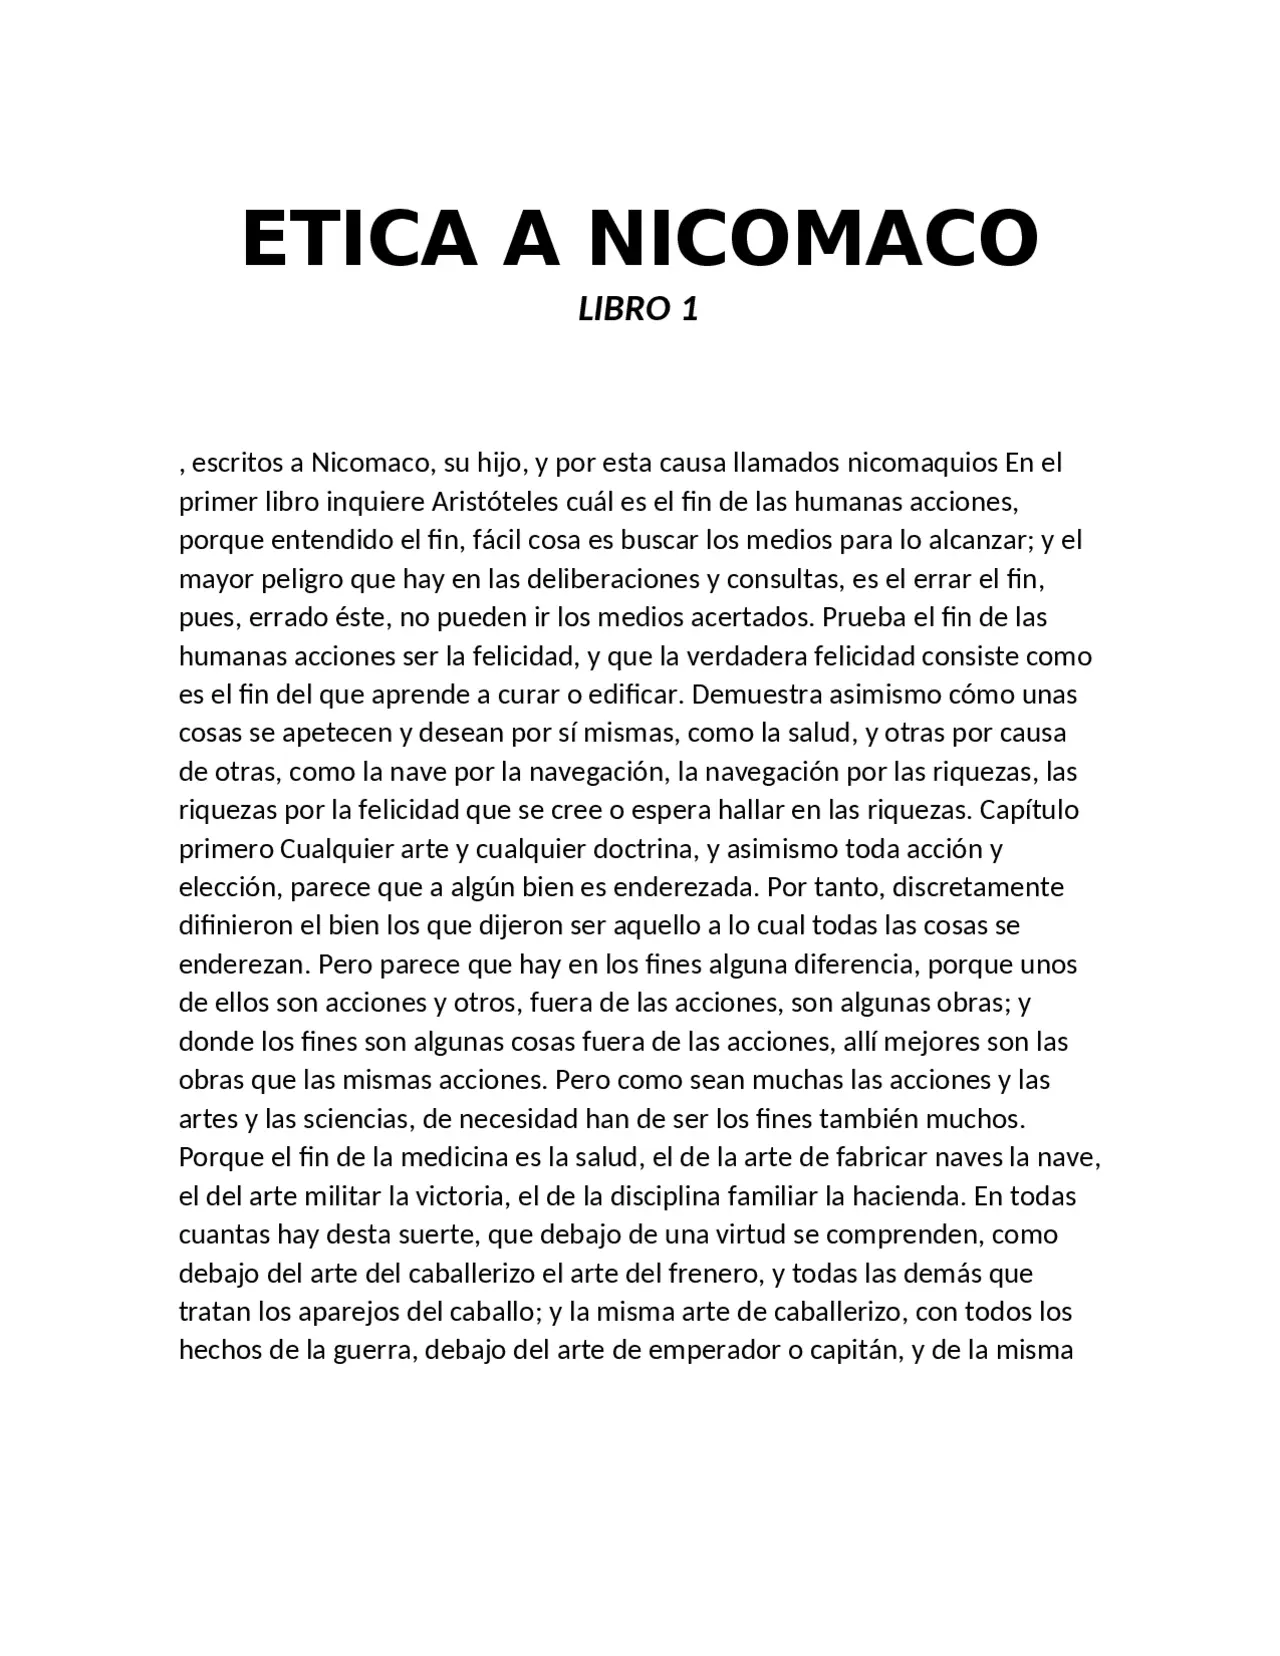 etica nicomaquea resumen por libros - Cómo comienza el libro 1 de la Ética a Nicómaco de Aristóteles